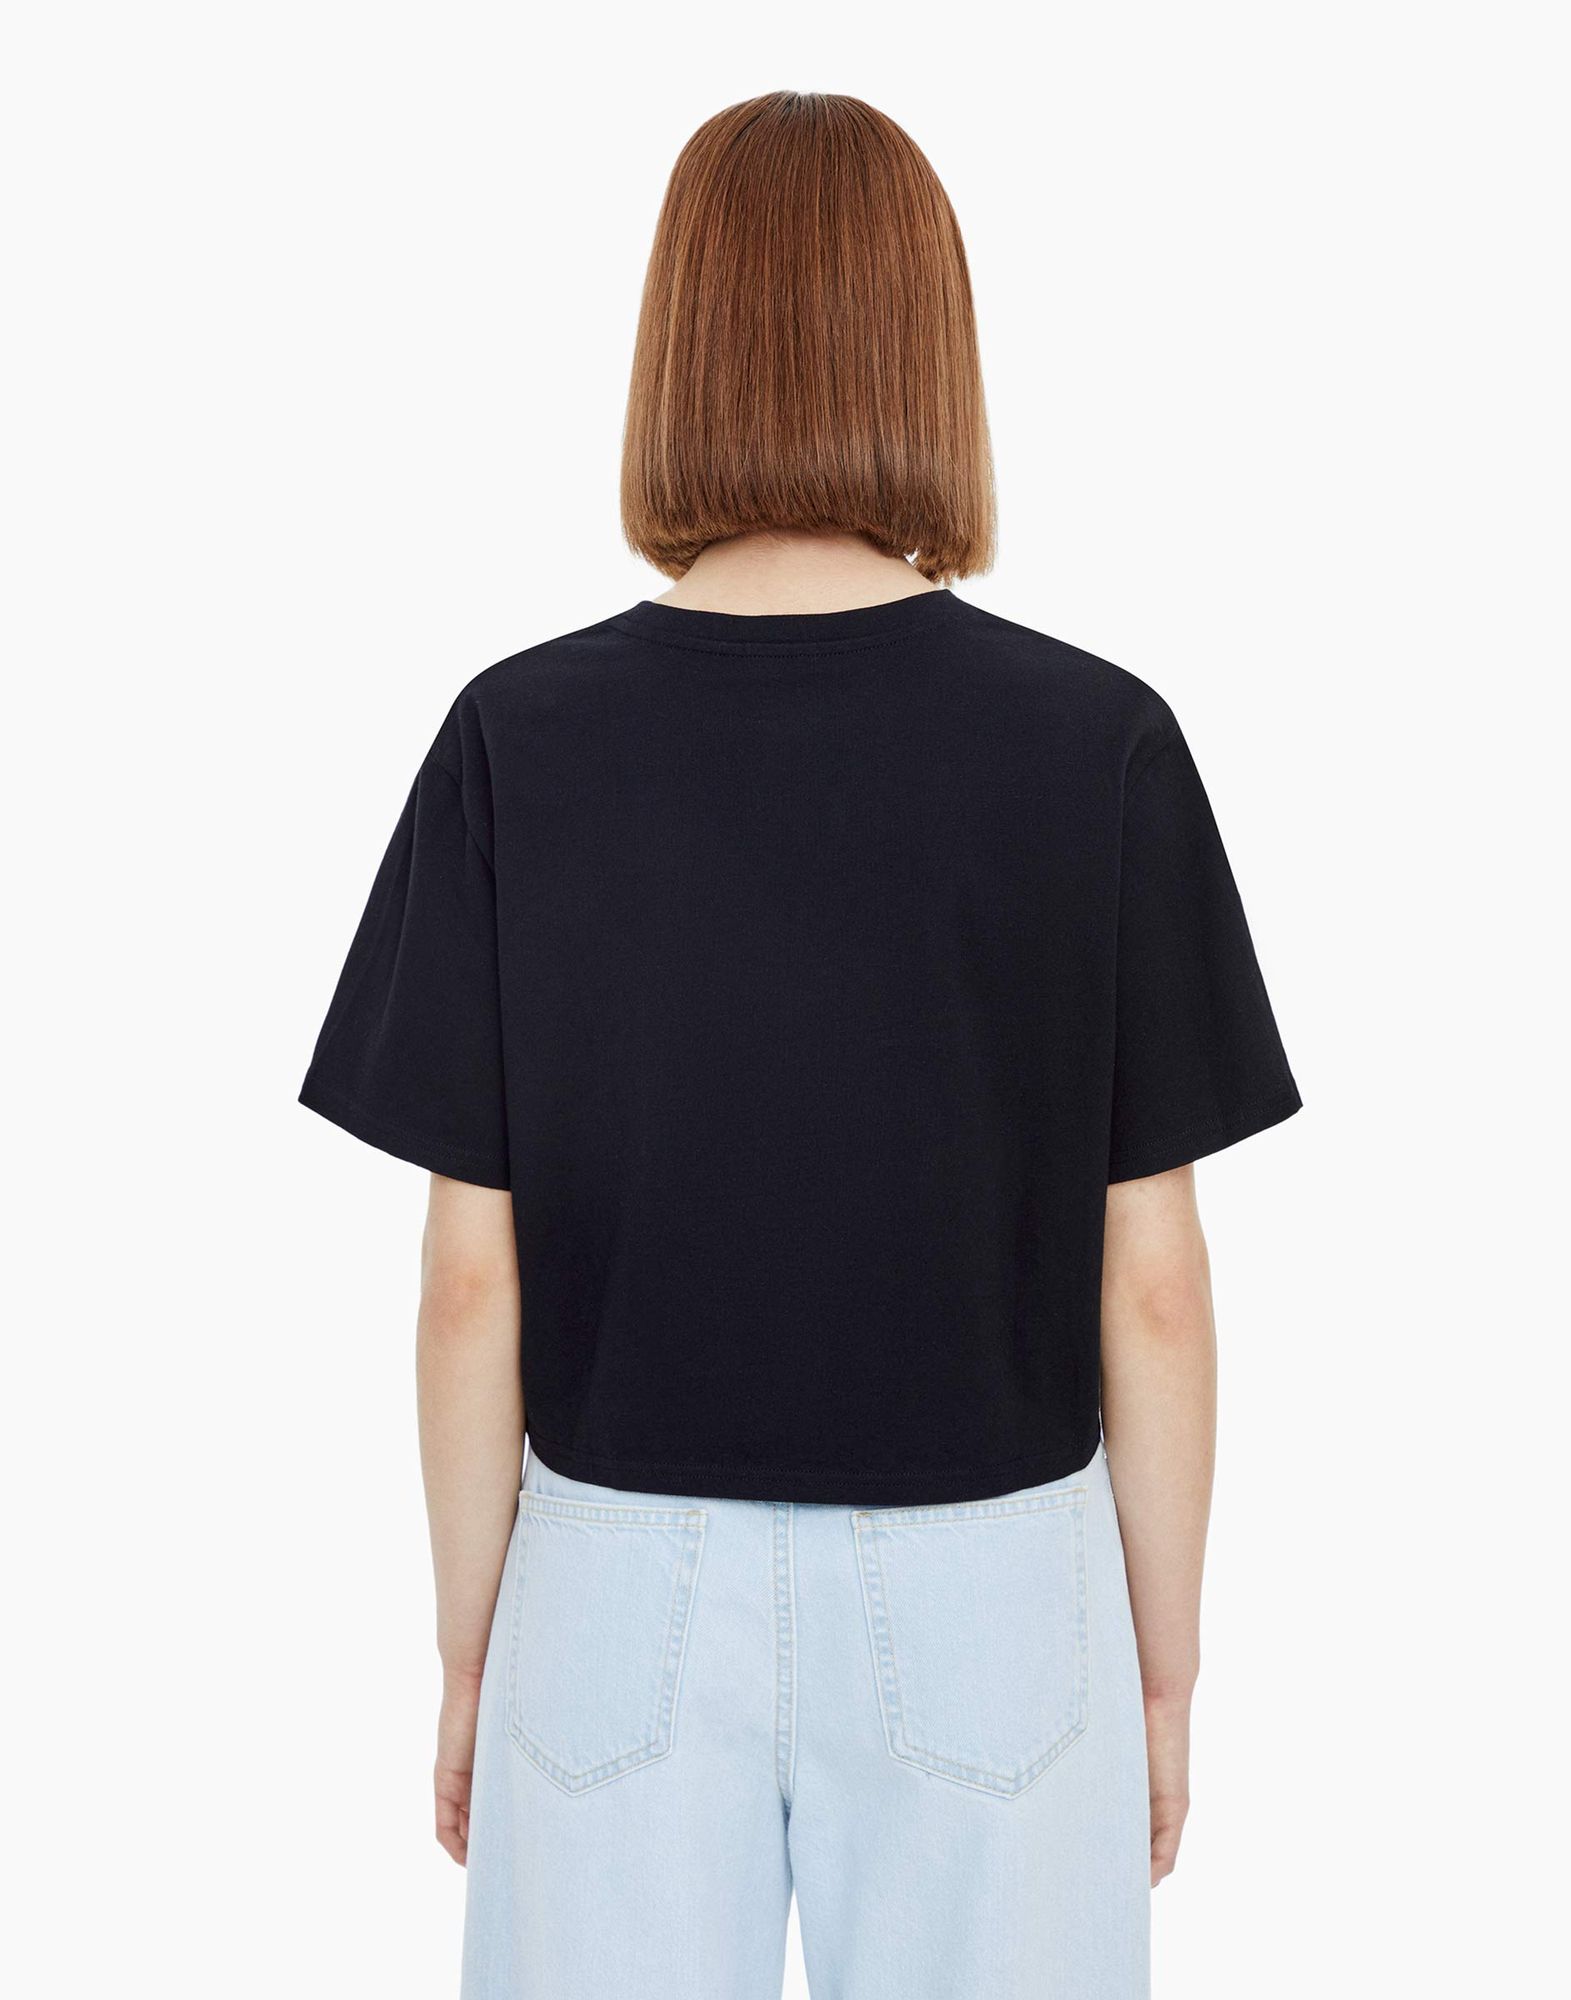 Чёрная укороченная футболка с узлом женская-2